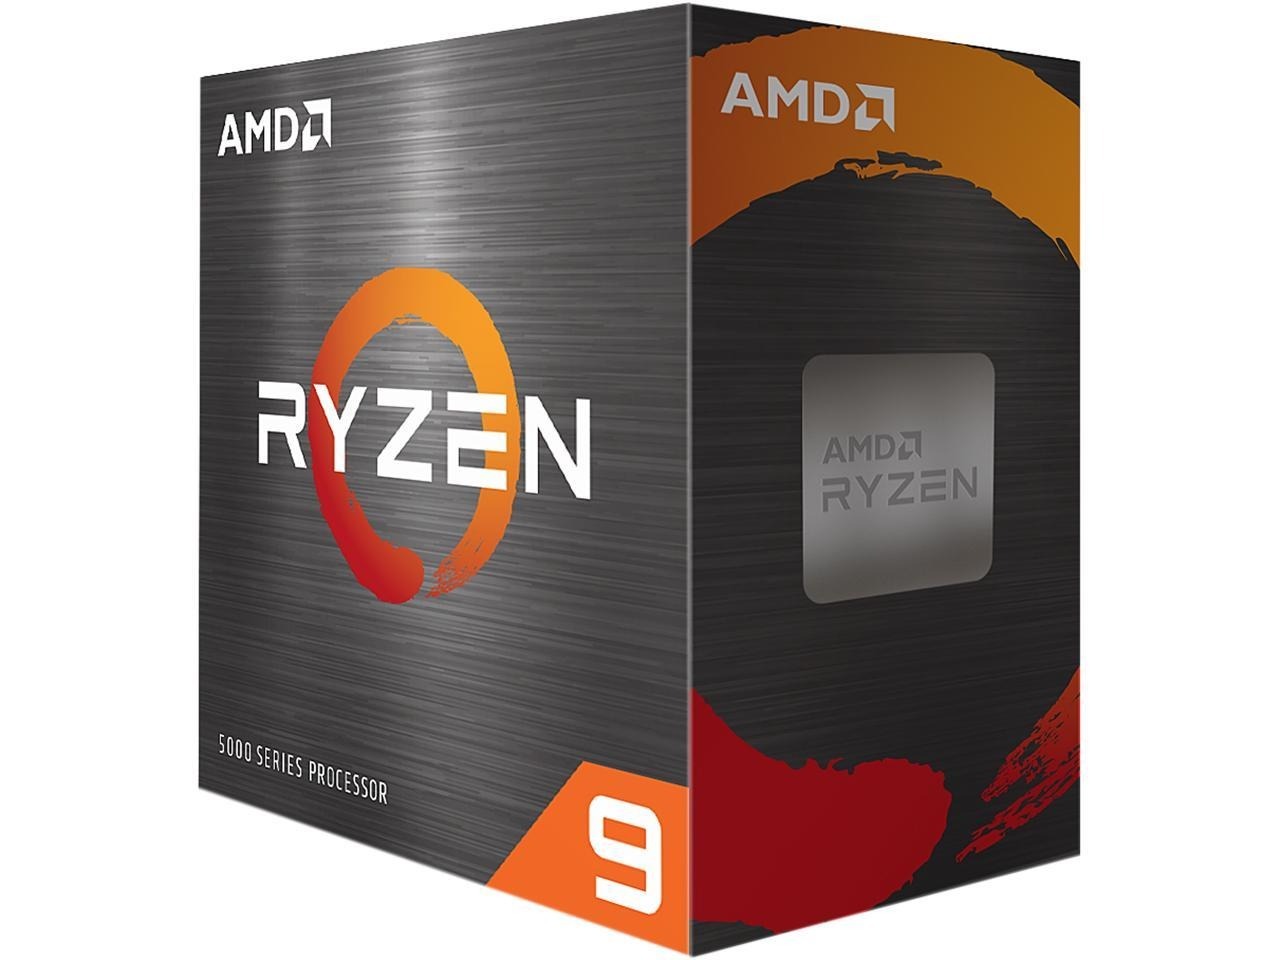 AMD Ryzen 9 5900X Zen 3 12-Core 24 Thread 3.7 GHz AM4 105W Desktop Processor $284 + Free Shipping